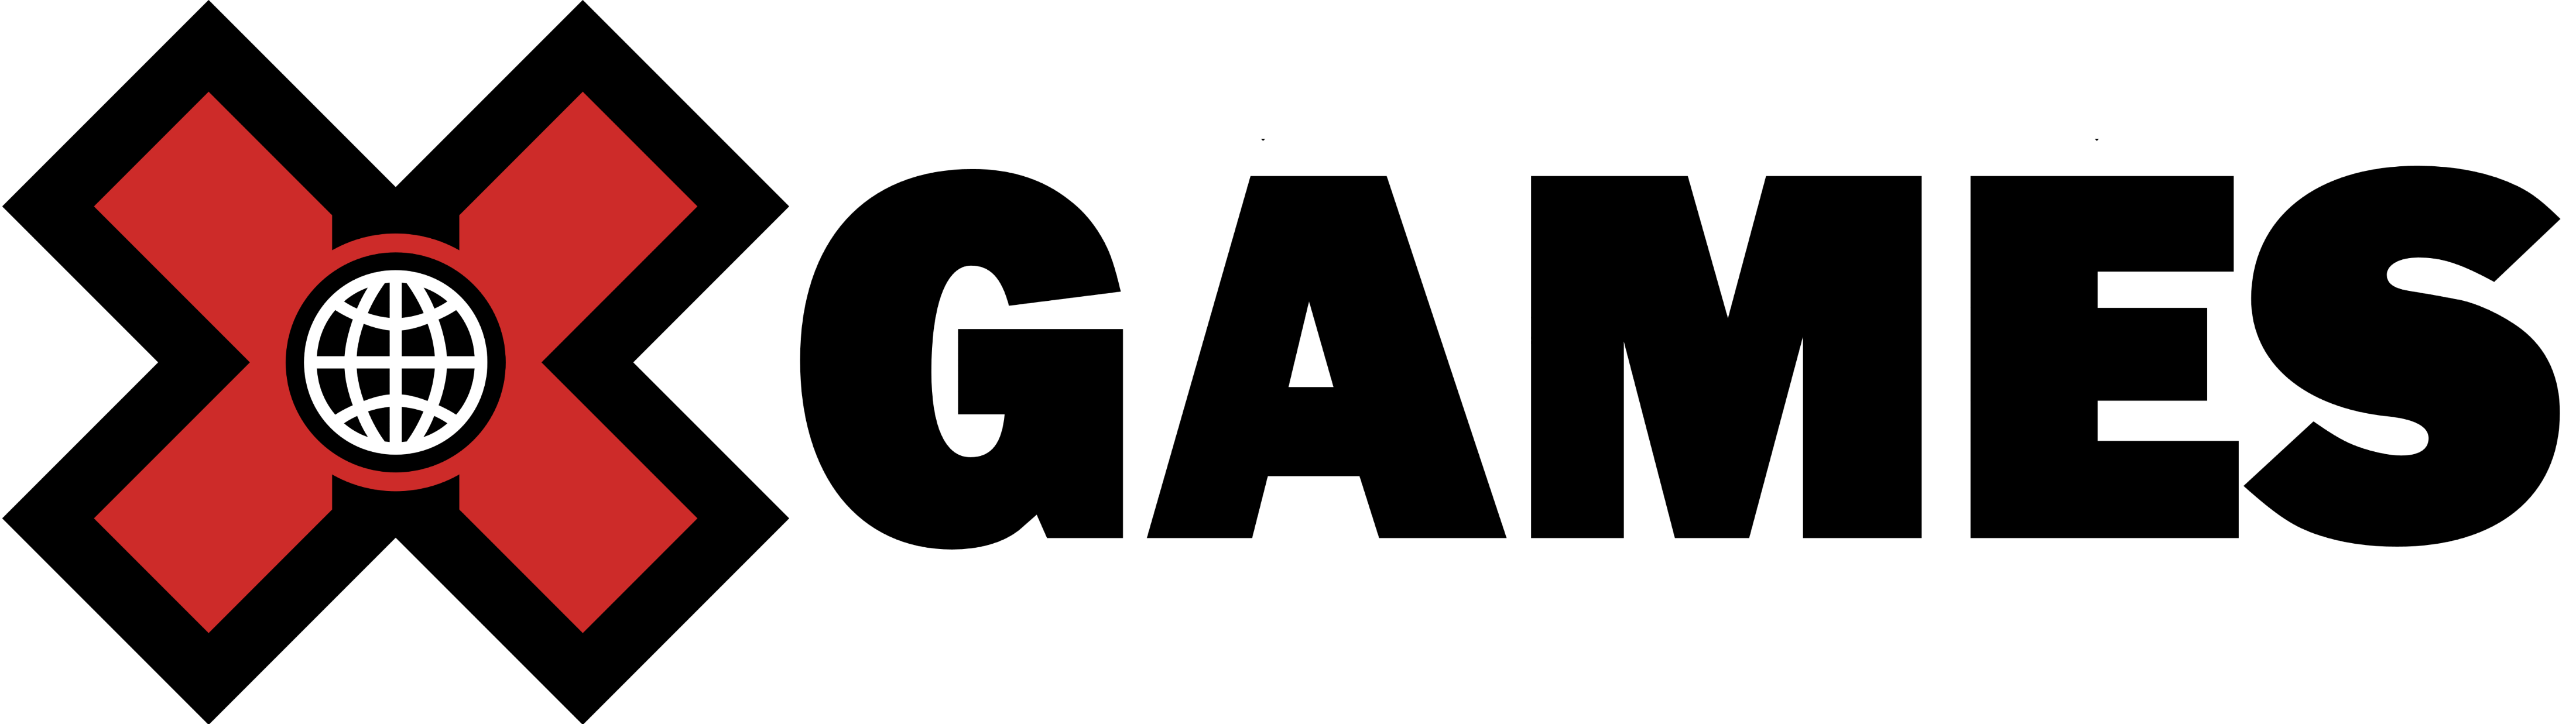 X Games Logo - LogoDix